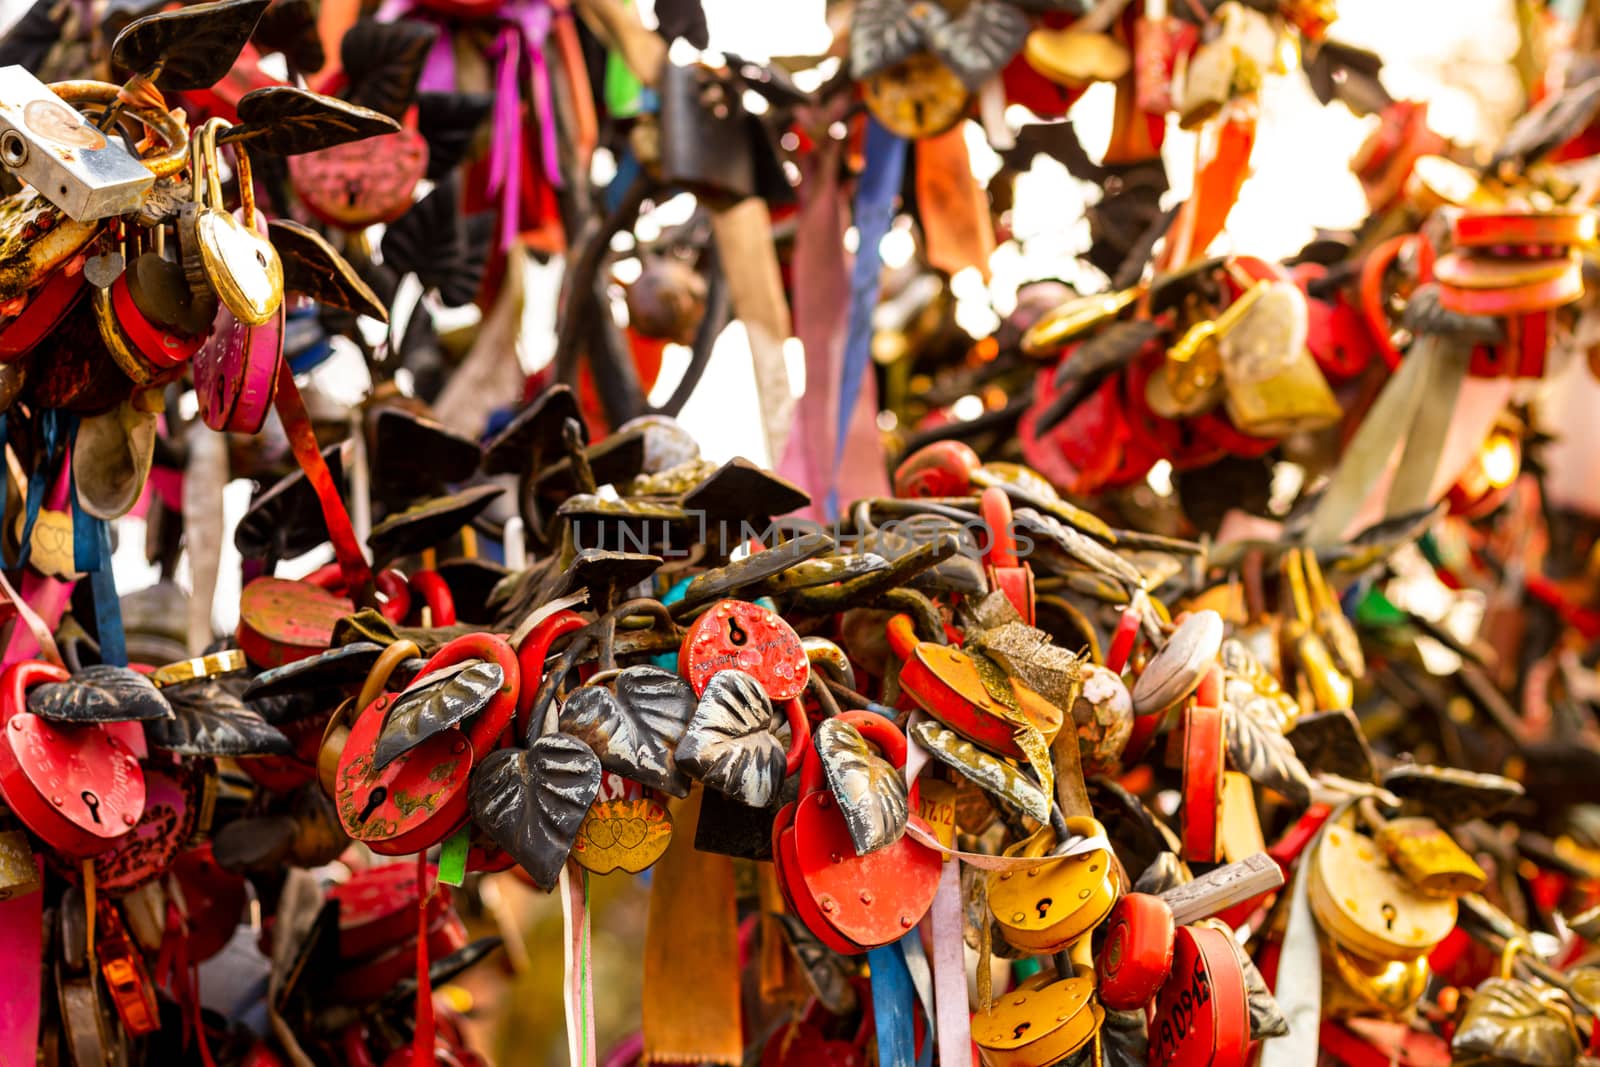 Many wedding colorful locks. by Eugene_Yemelyanov